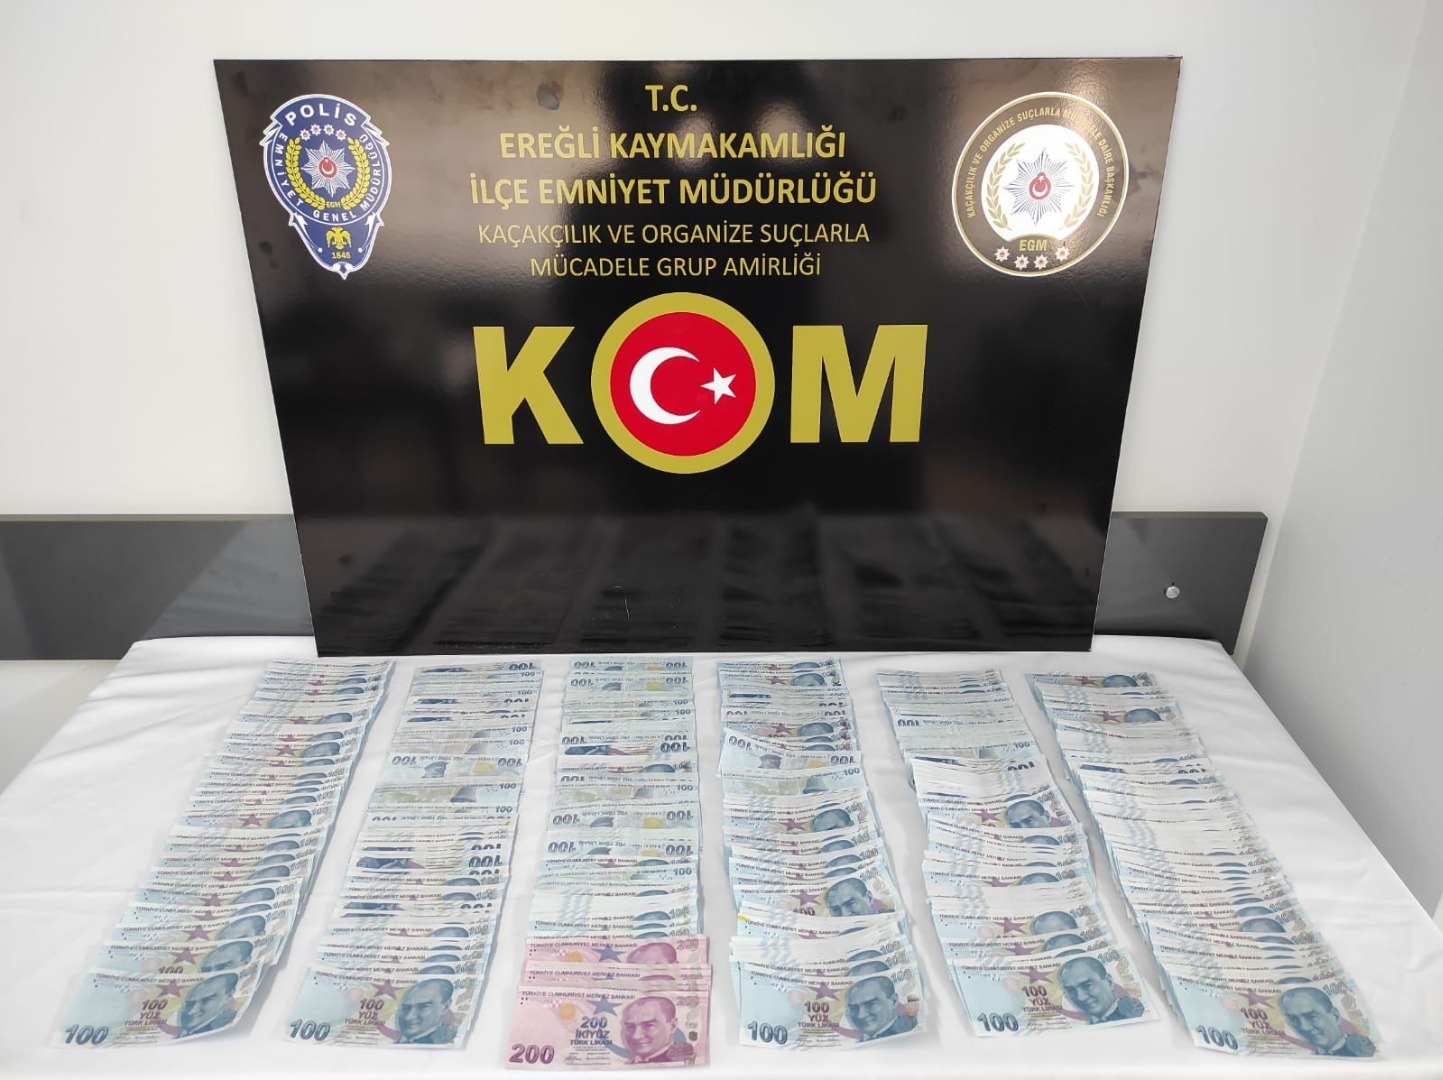 Konya'da 54 bin 700 TL sahte para ele geçirildi: 7 kişi tutuklandı